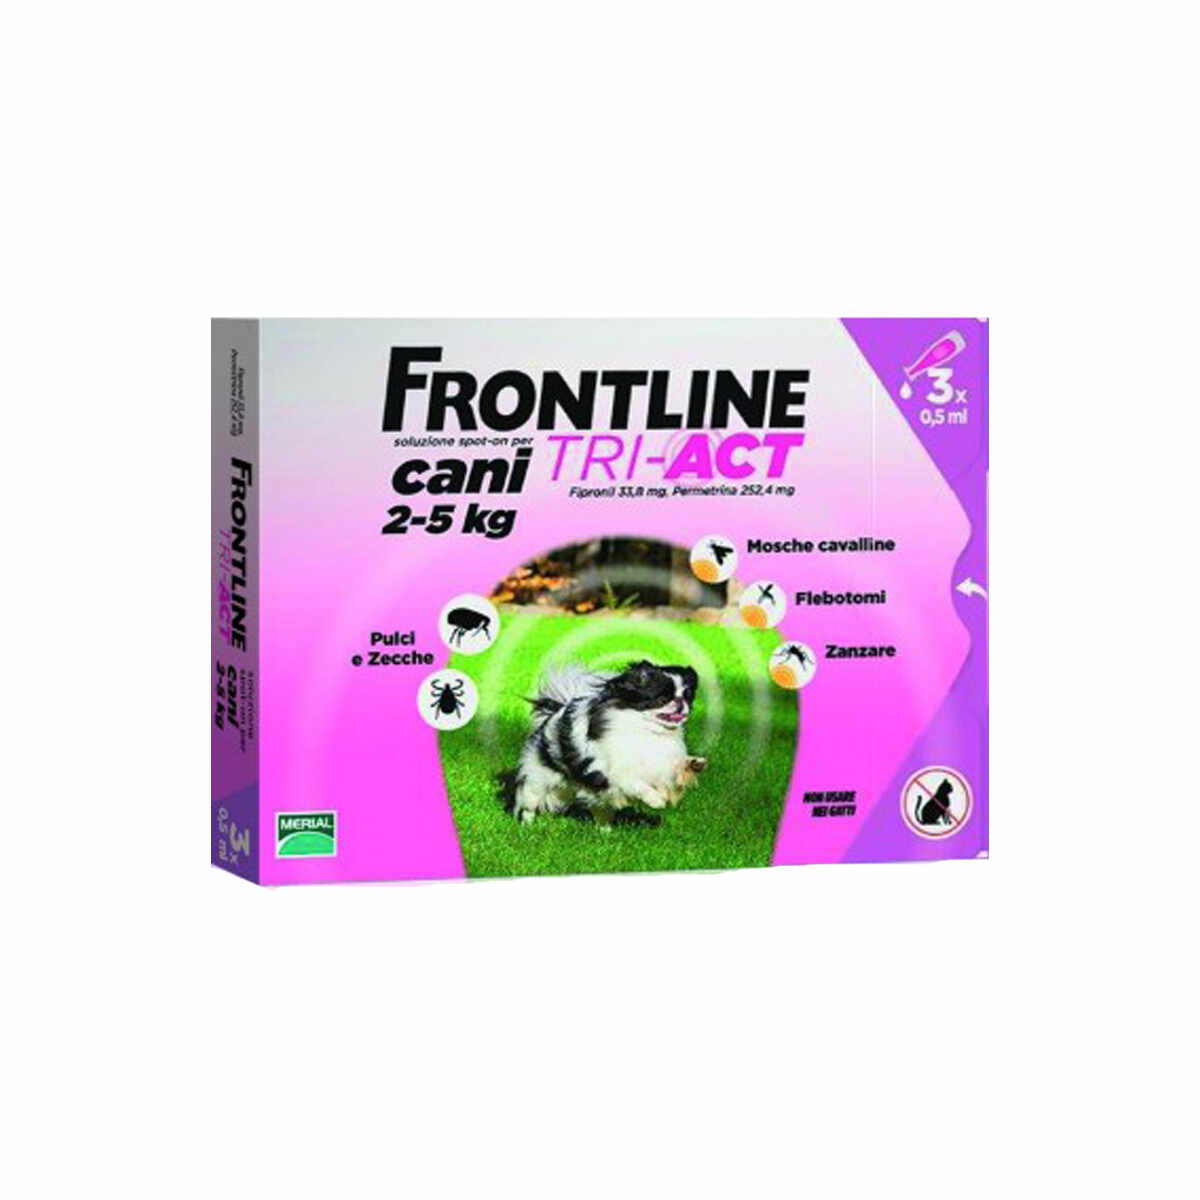 Frontline Tri-Act pentru caini de talie foarte mica 2-5kg, 3 pipete antiparazitare